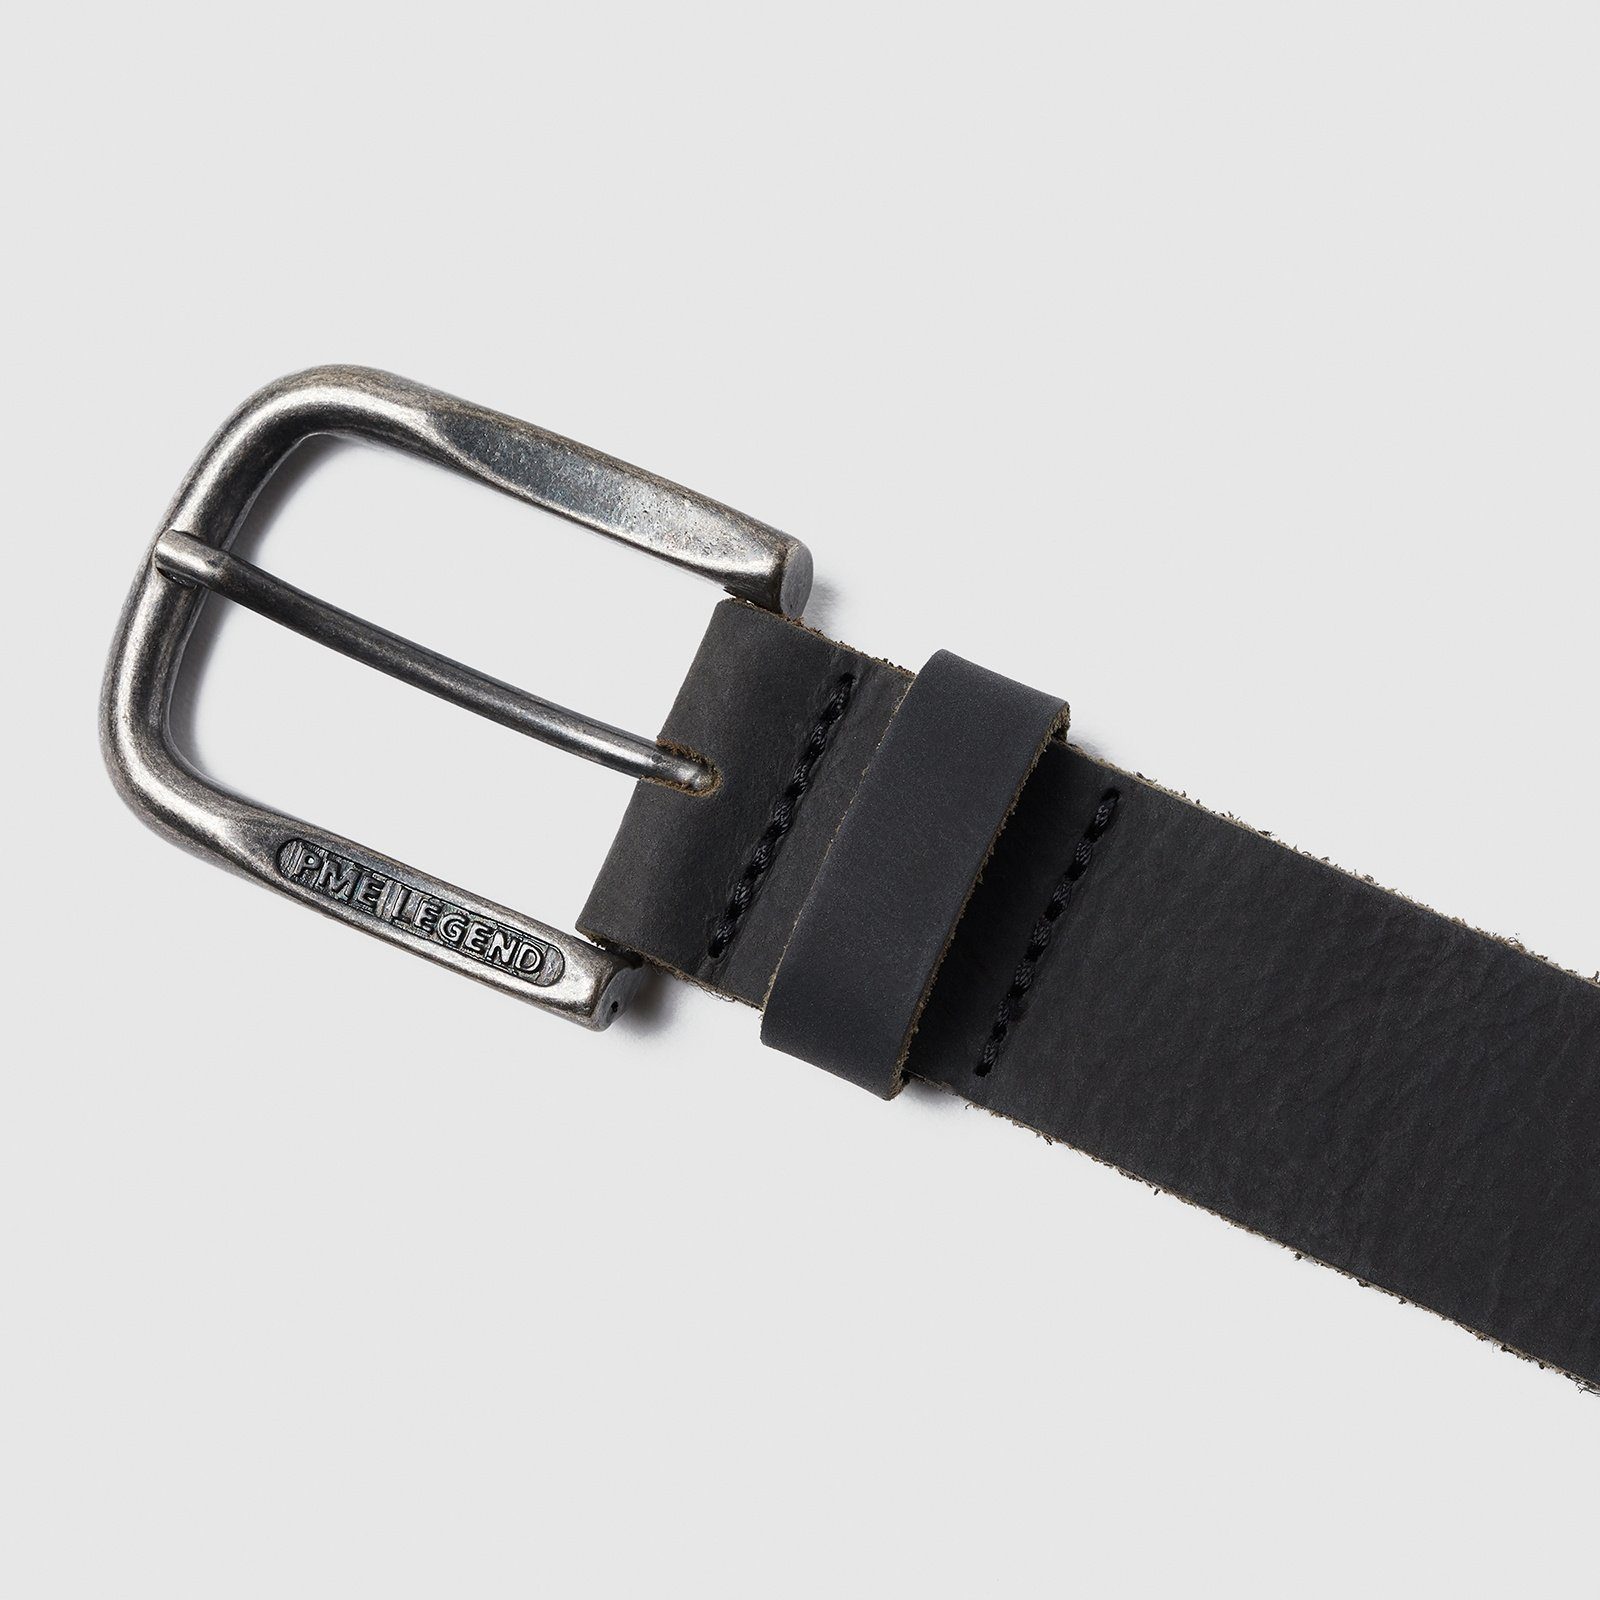 PME LEGEND Ledergürtel Belt Leather black belt